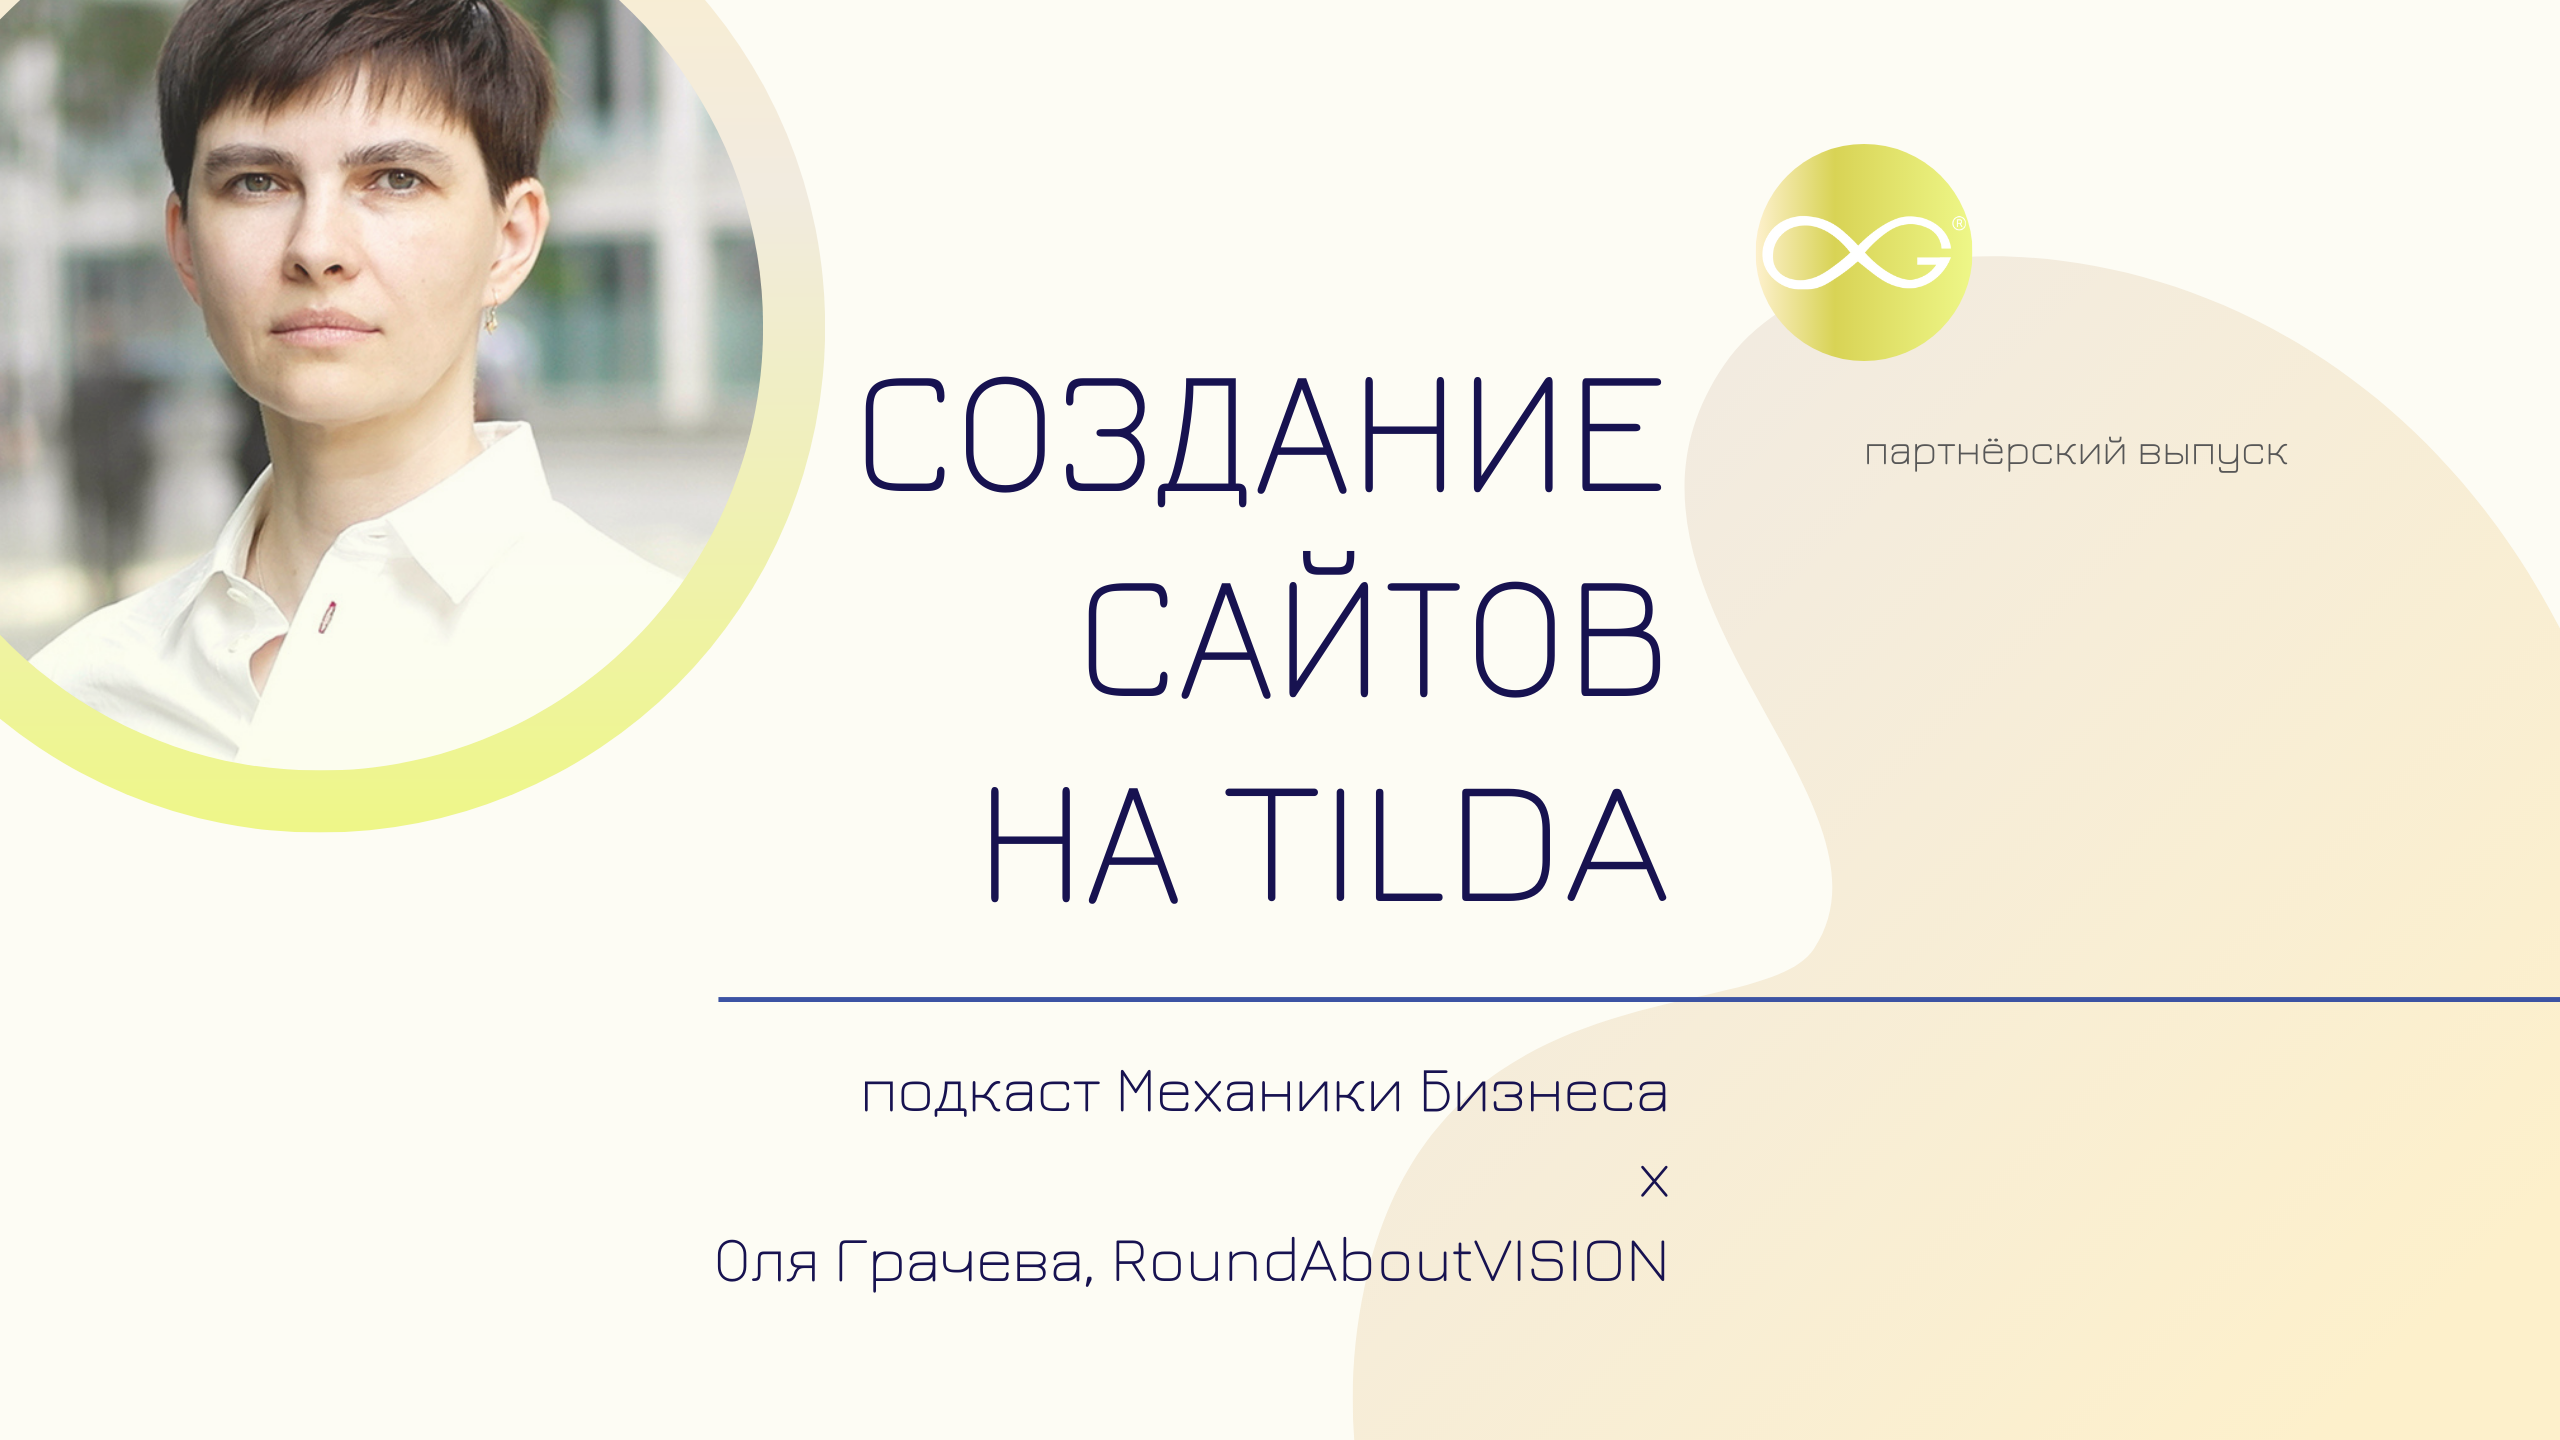 RoundaboutVISION - Оля Грачева | подкаст Механики Бизнеса | # 69 | Создание сайтов на Tilda